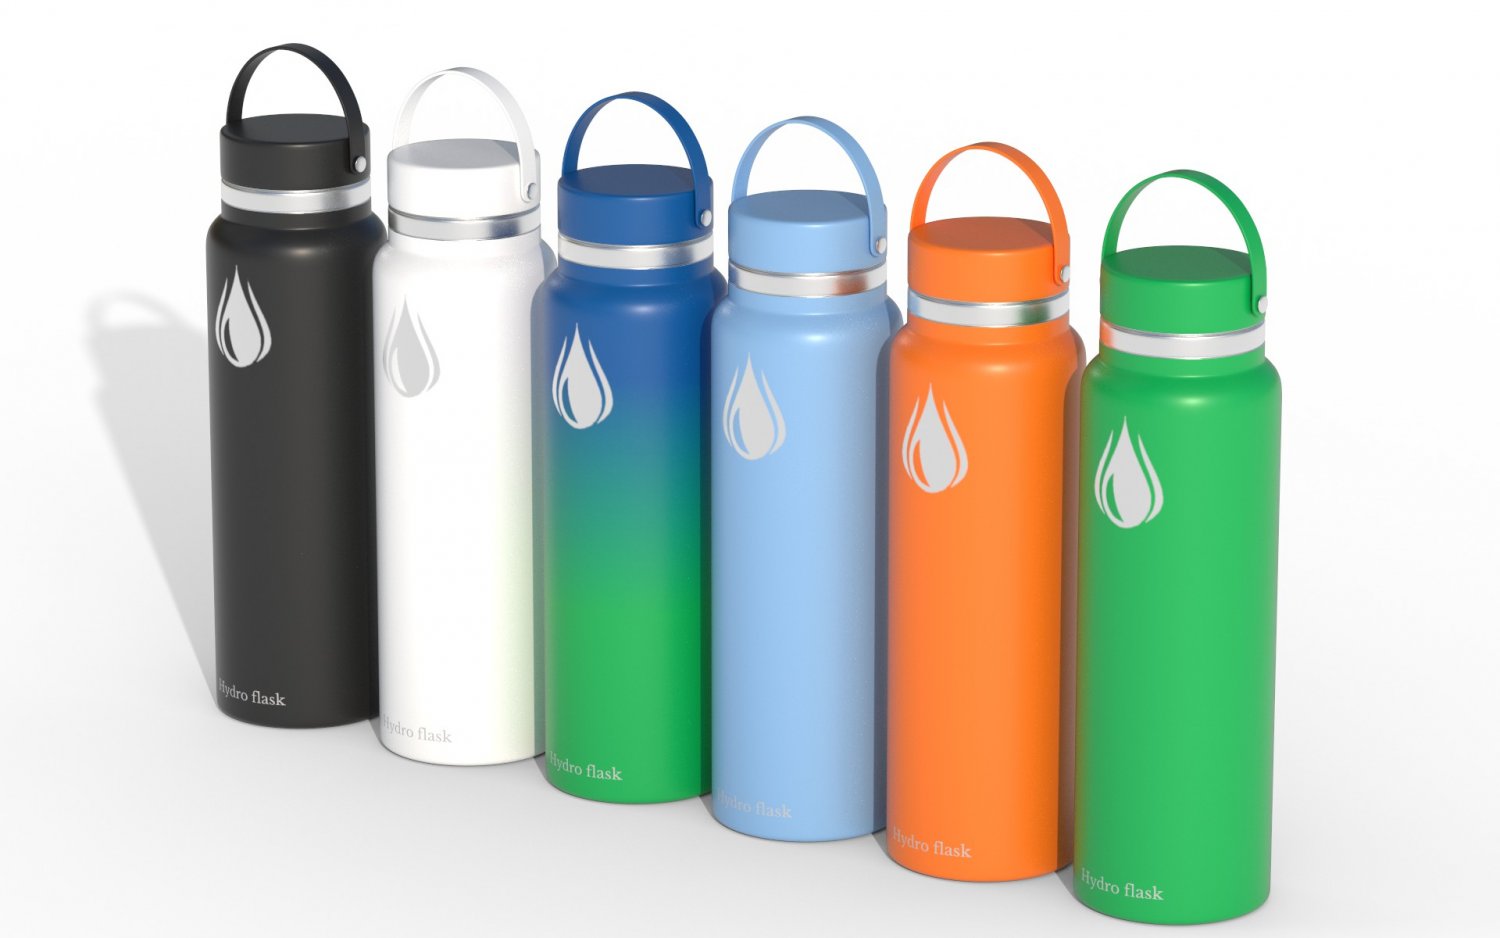 Hydro Flask Water Bottle 3D model